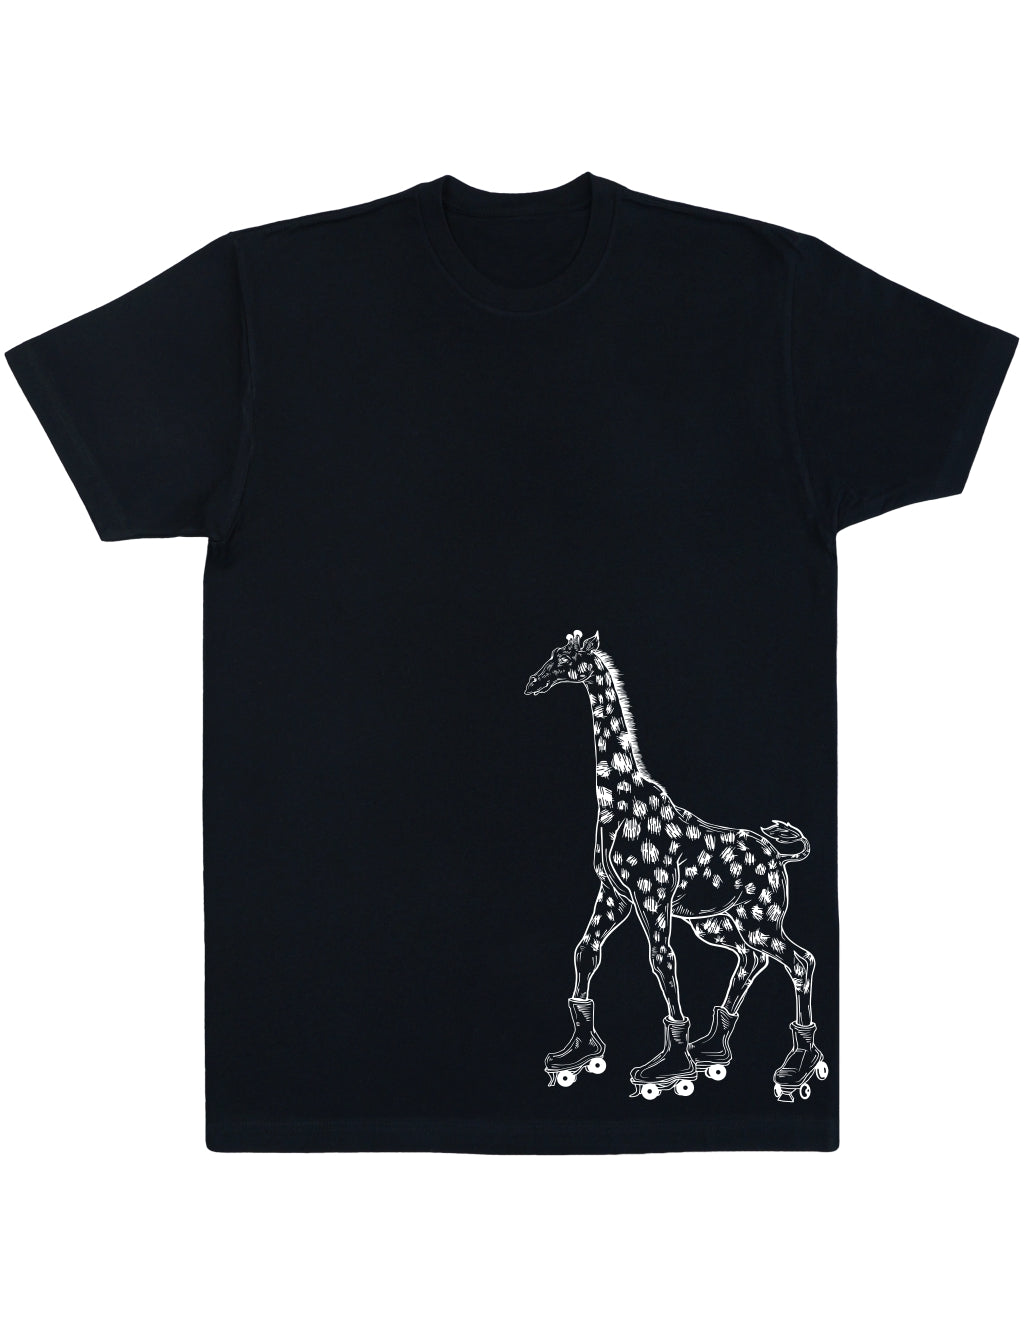 seembo-giraffe-on-a-roller-skates-men-cotton-black-t-shirt-side-print